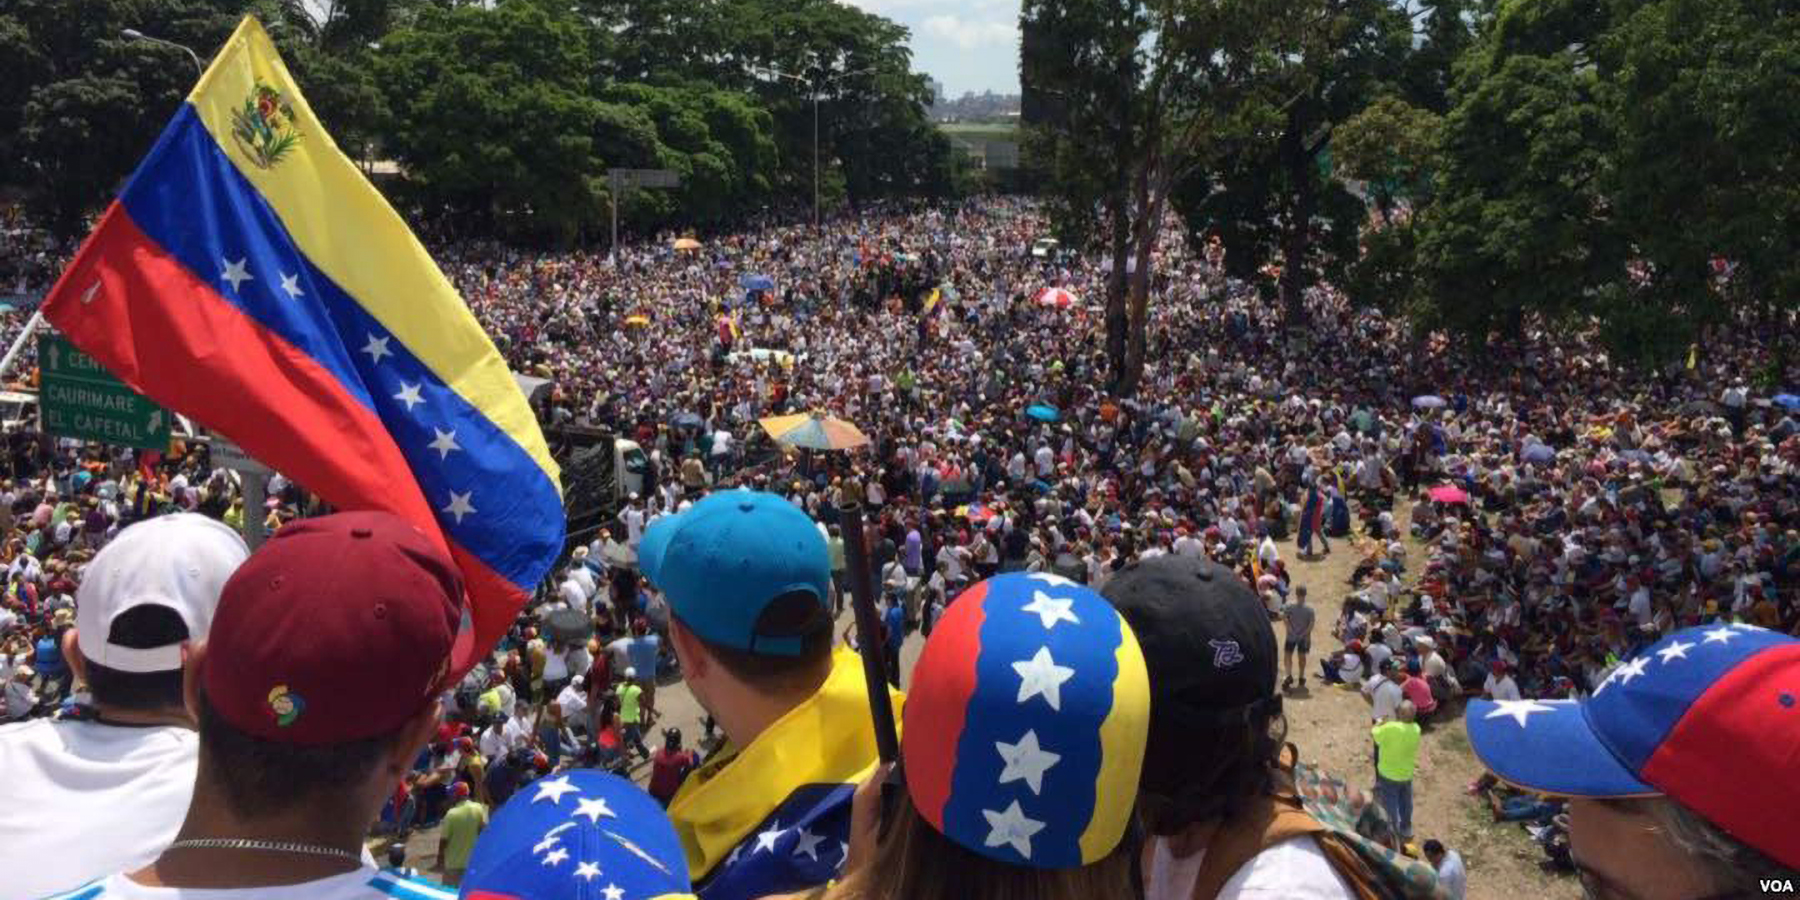 2017년 5월 20일에 행진하는 수백만 명의 베네수엘라 사람들 – 미국의 소리